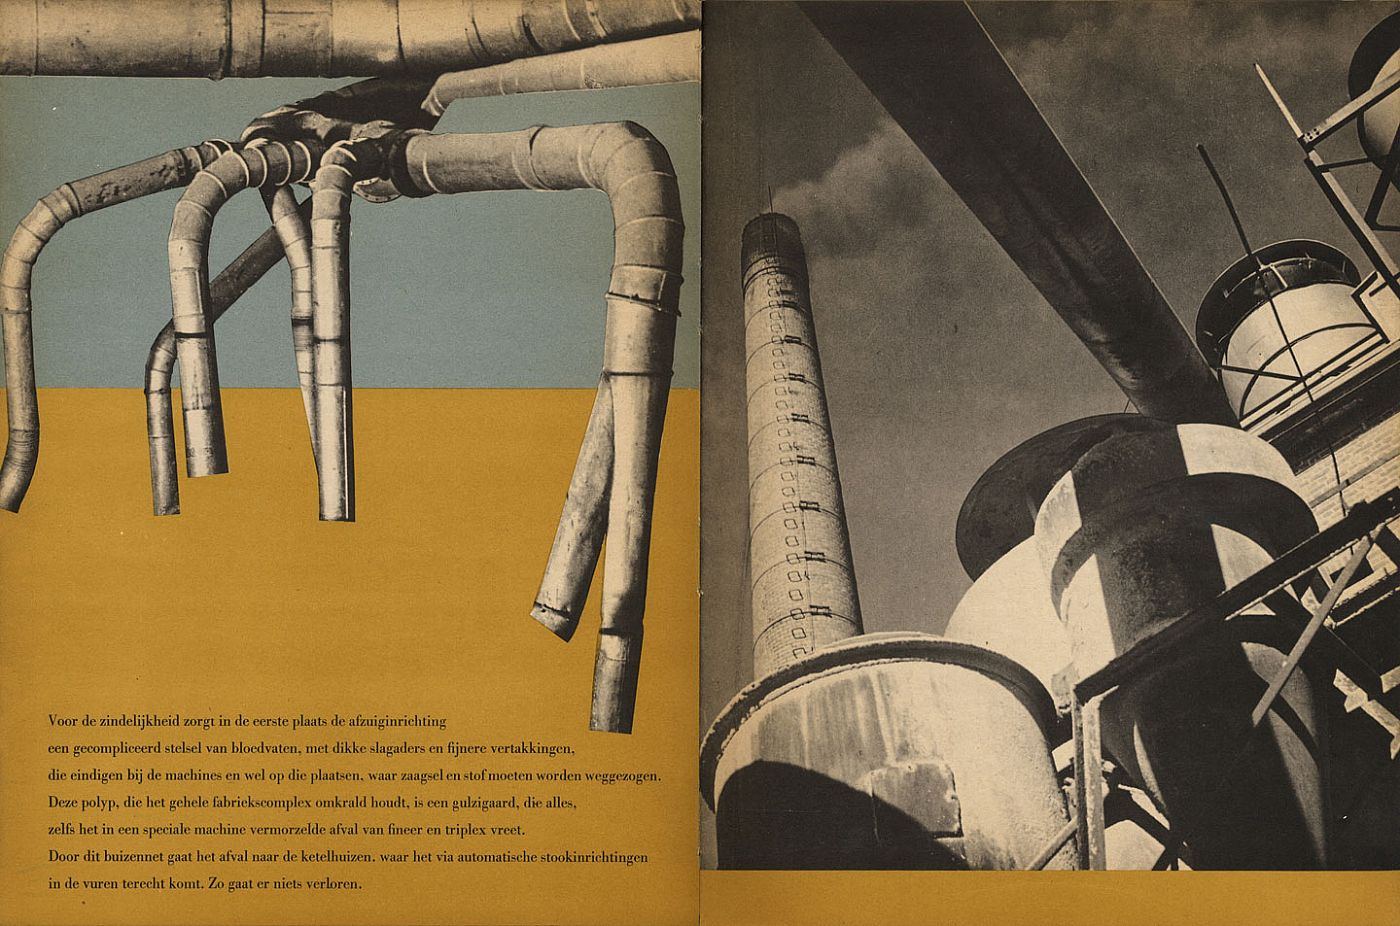 50 Jaar Bruynzeel (50 Years of Bruynzeel) 1897-1947 (Thijsen Corporate Photography)